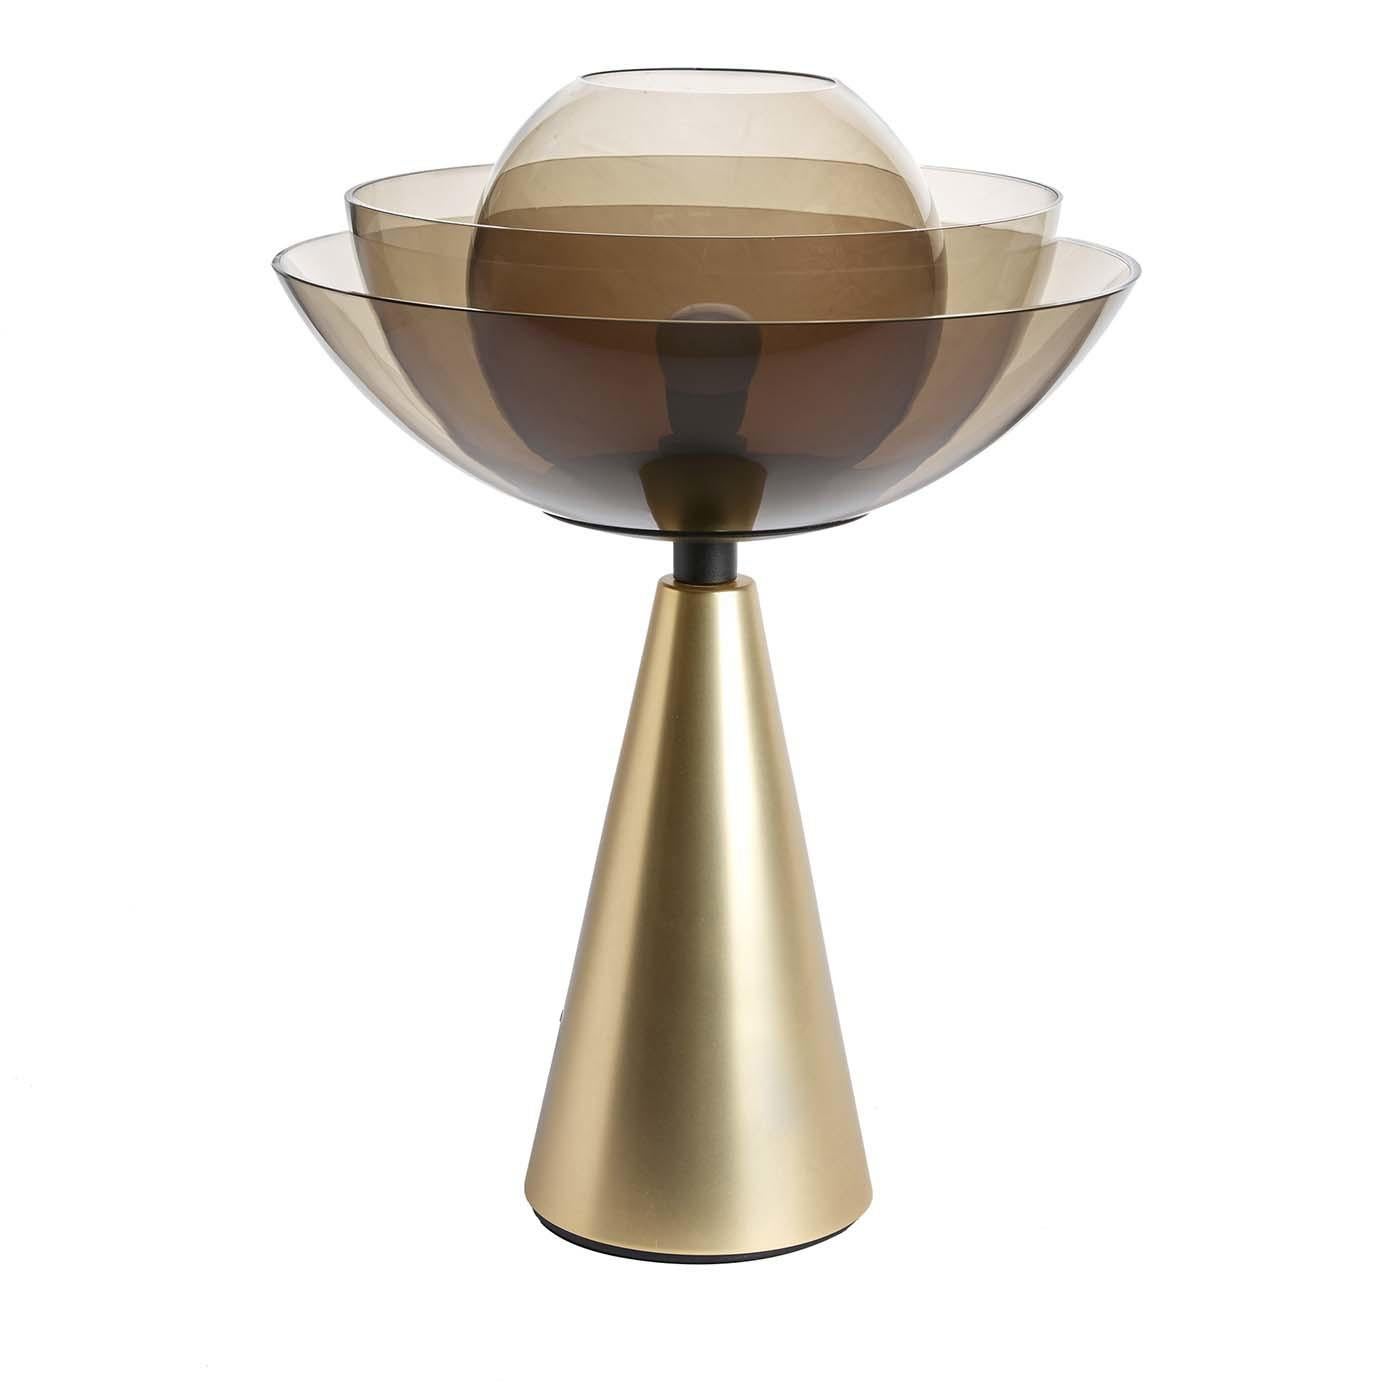 Un design fascinant inspiré de la fleur de lotus, cette superbe lampe de table incarne l'élégance, la perfection, la pureté et la grâce. Conçue par Serena Confalonieri, cette lampe est composée d'une base conique en fer laitonné et d'un superbe